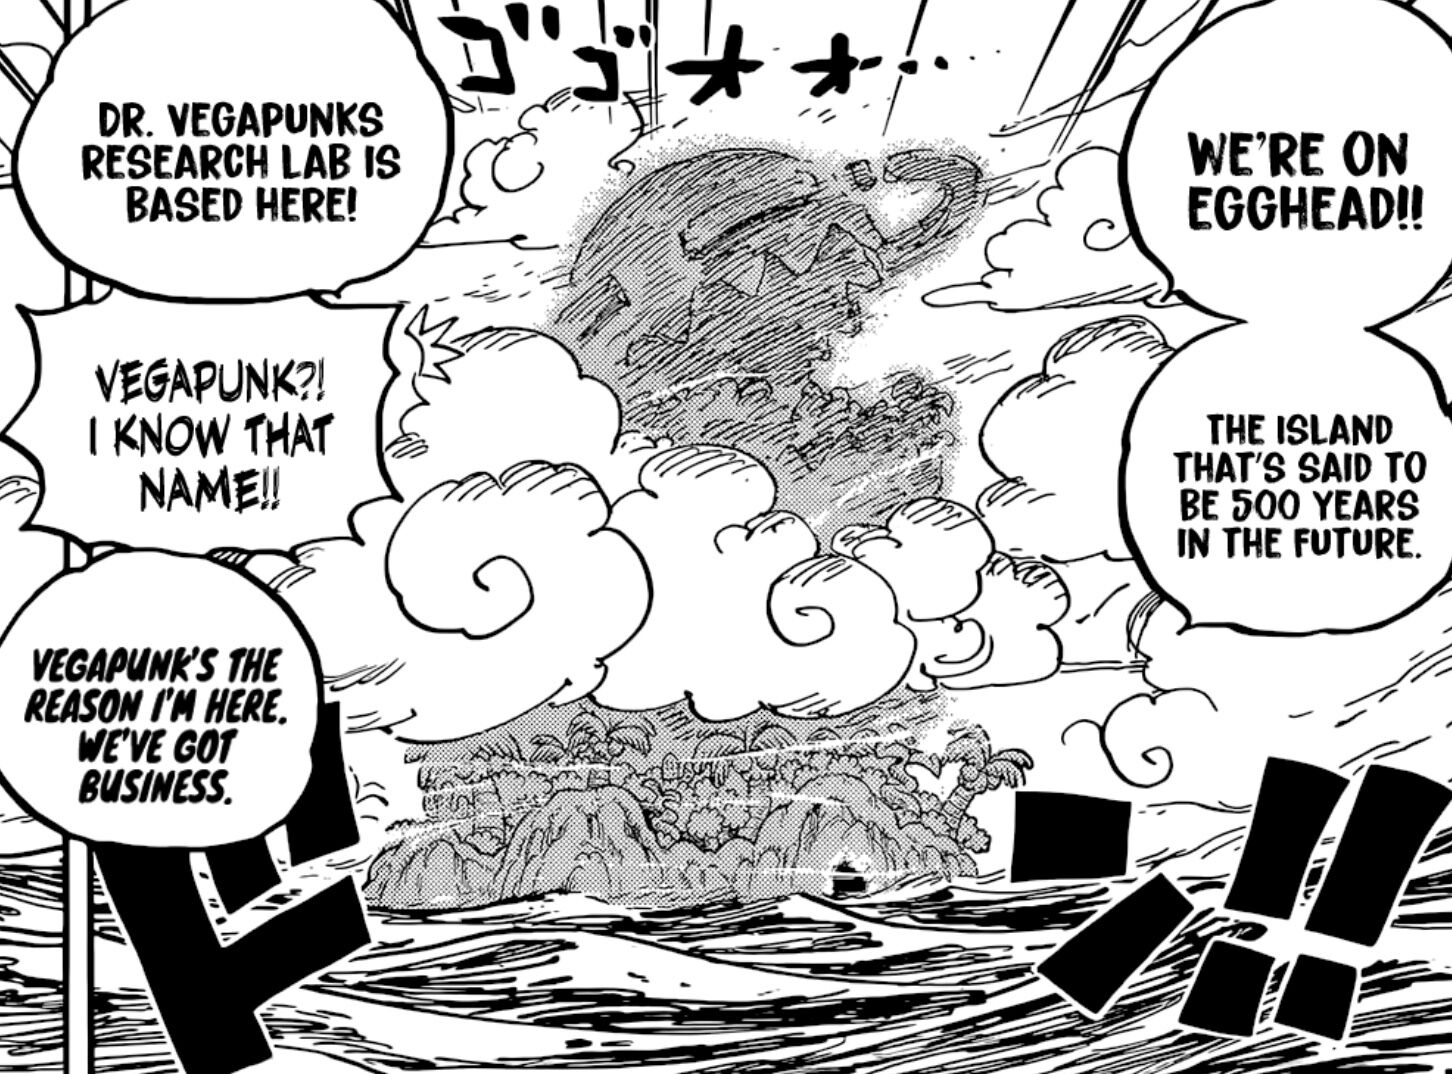 Kapitel 1061 - Insel der Zukunft, Egghead - Seite 11 - One Piece Weekly  Jump Kapitel - Pirateboard - Das One Piece Forum